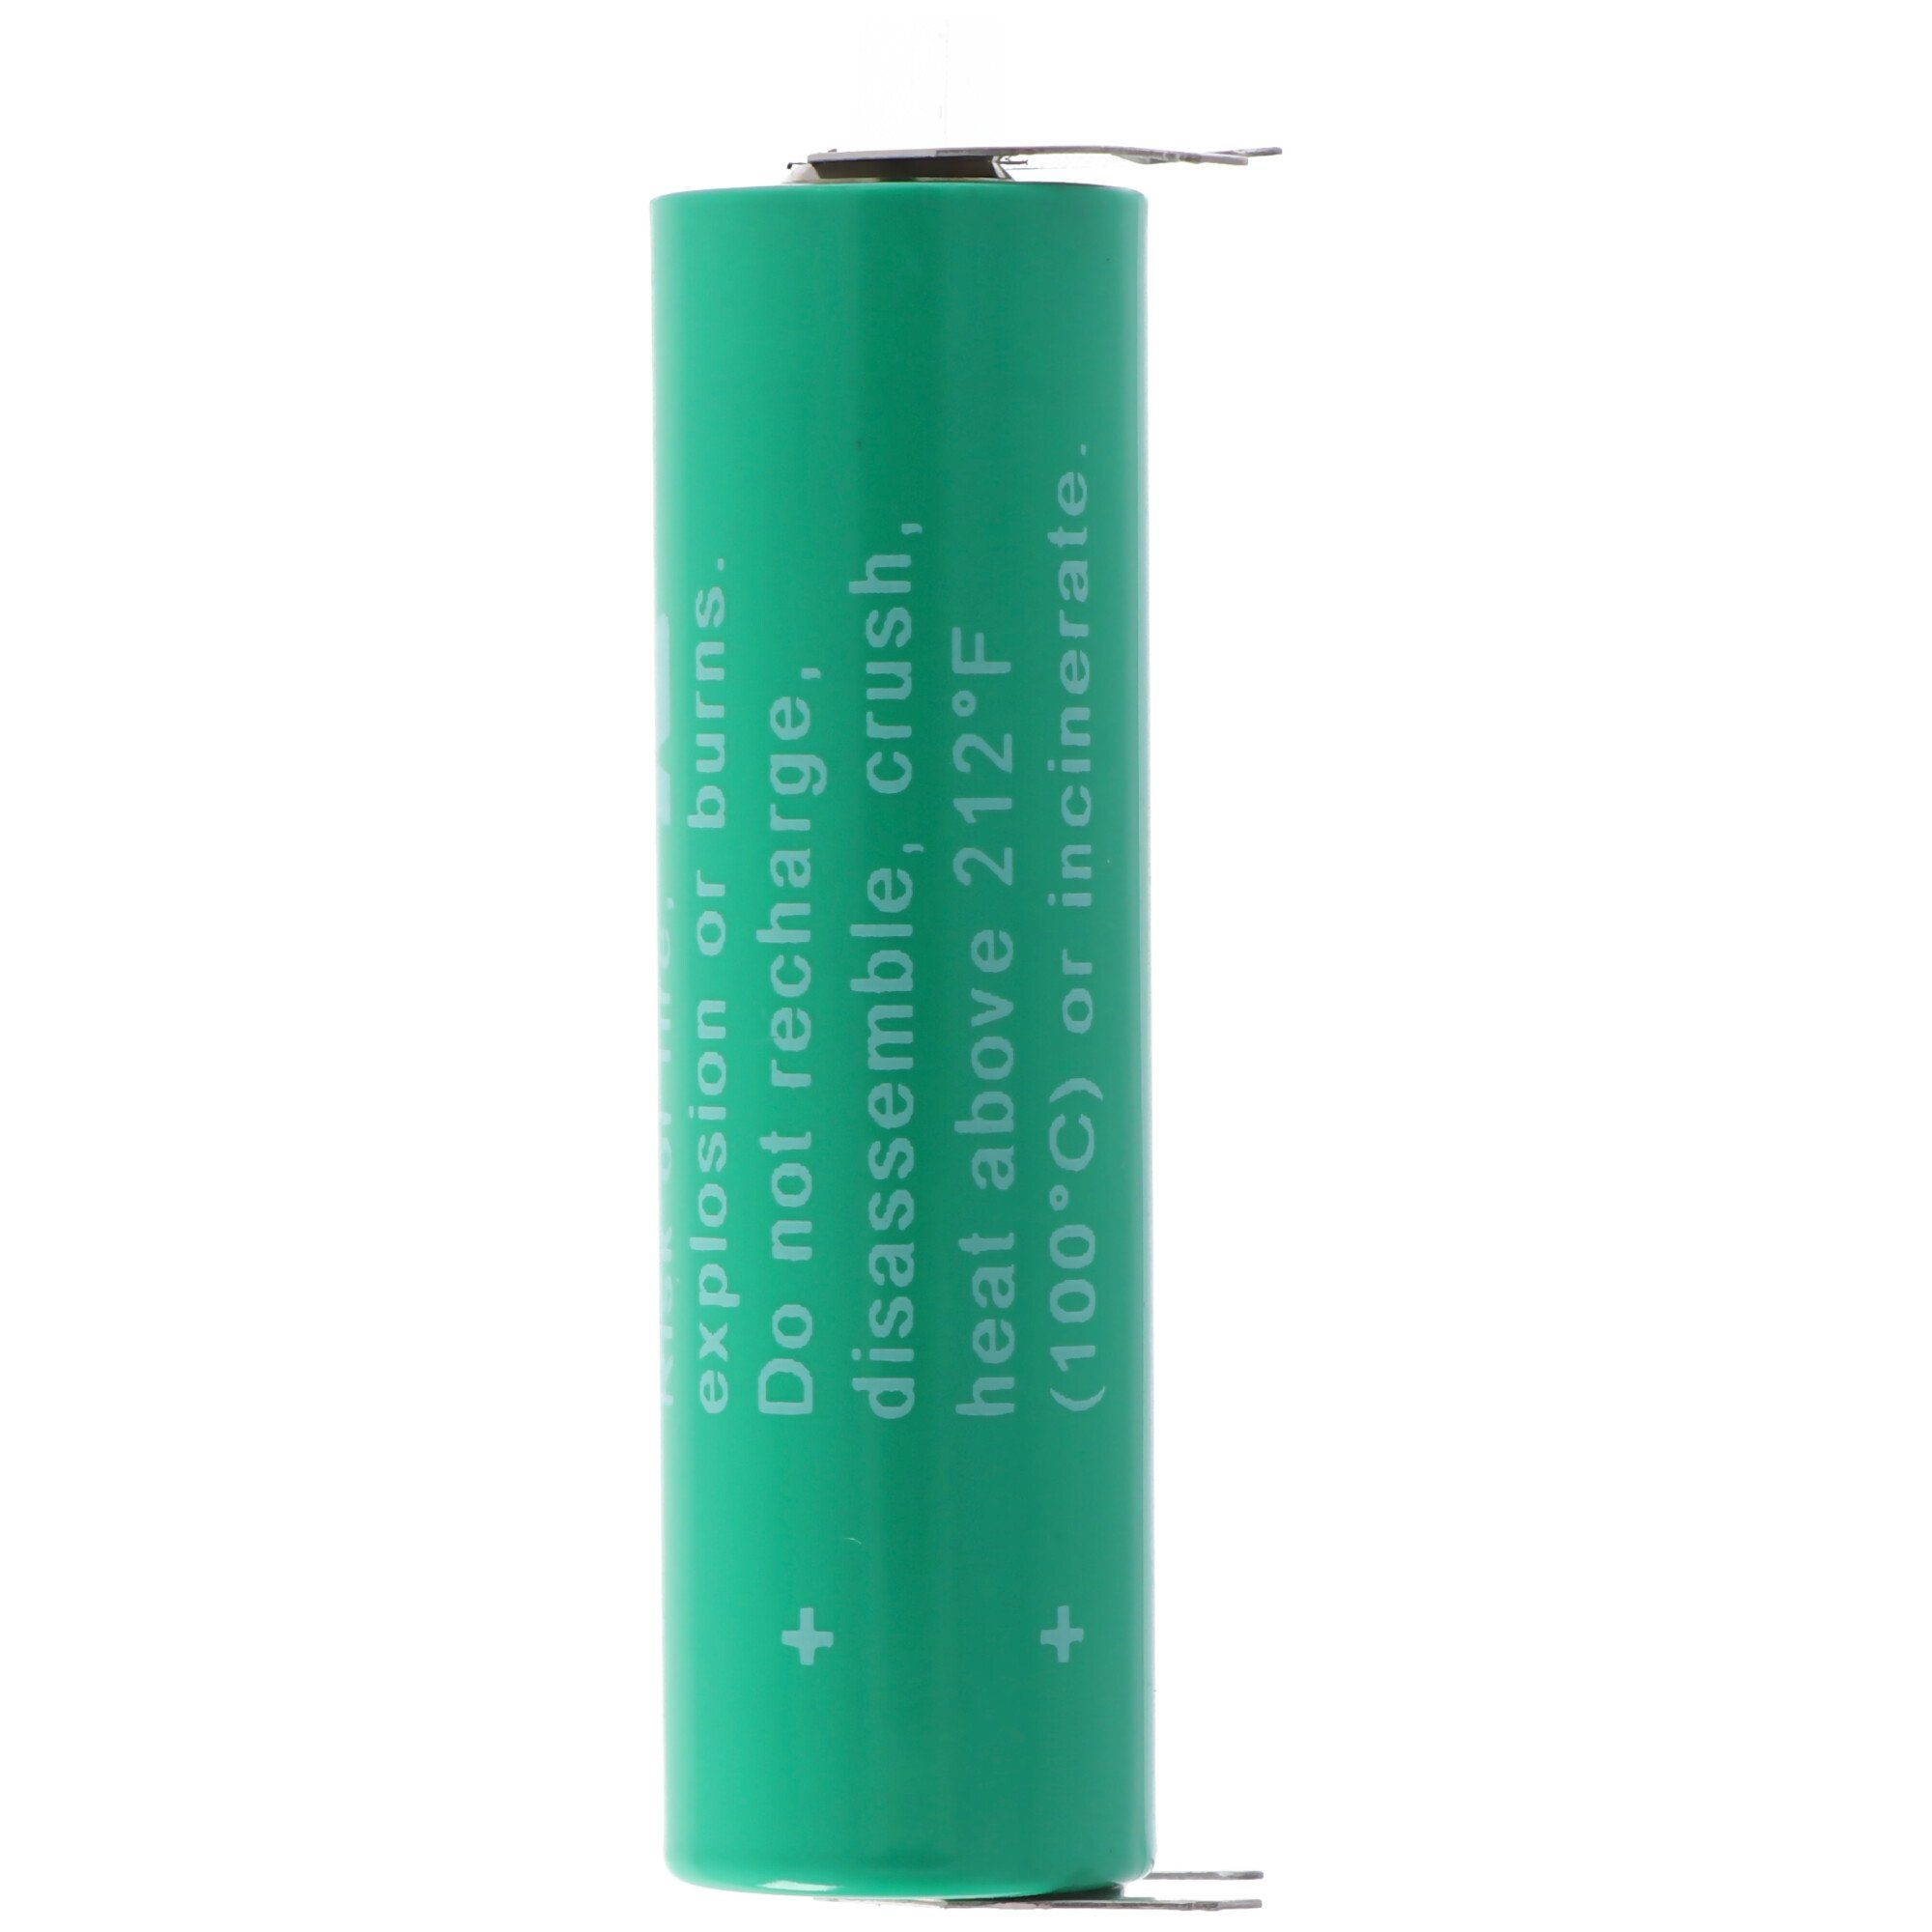 ++--, AA 6117 10mm, Varta Batterie, 3V Printanschluss VARTA mit Rastermaß CR L (3,0 Mignon V)